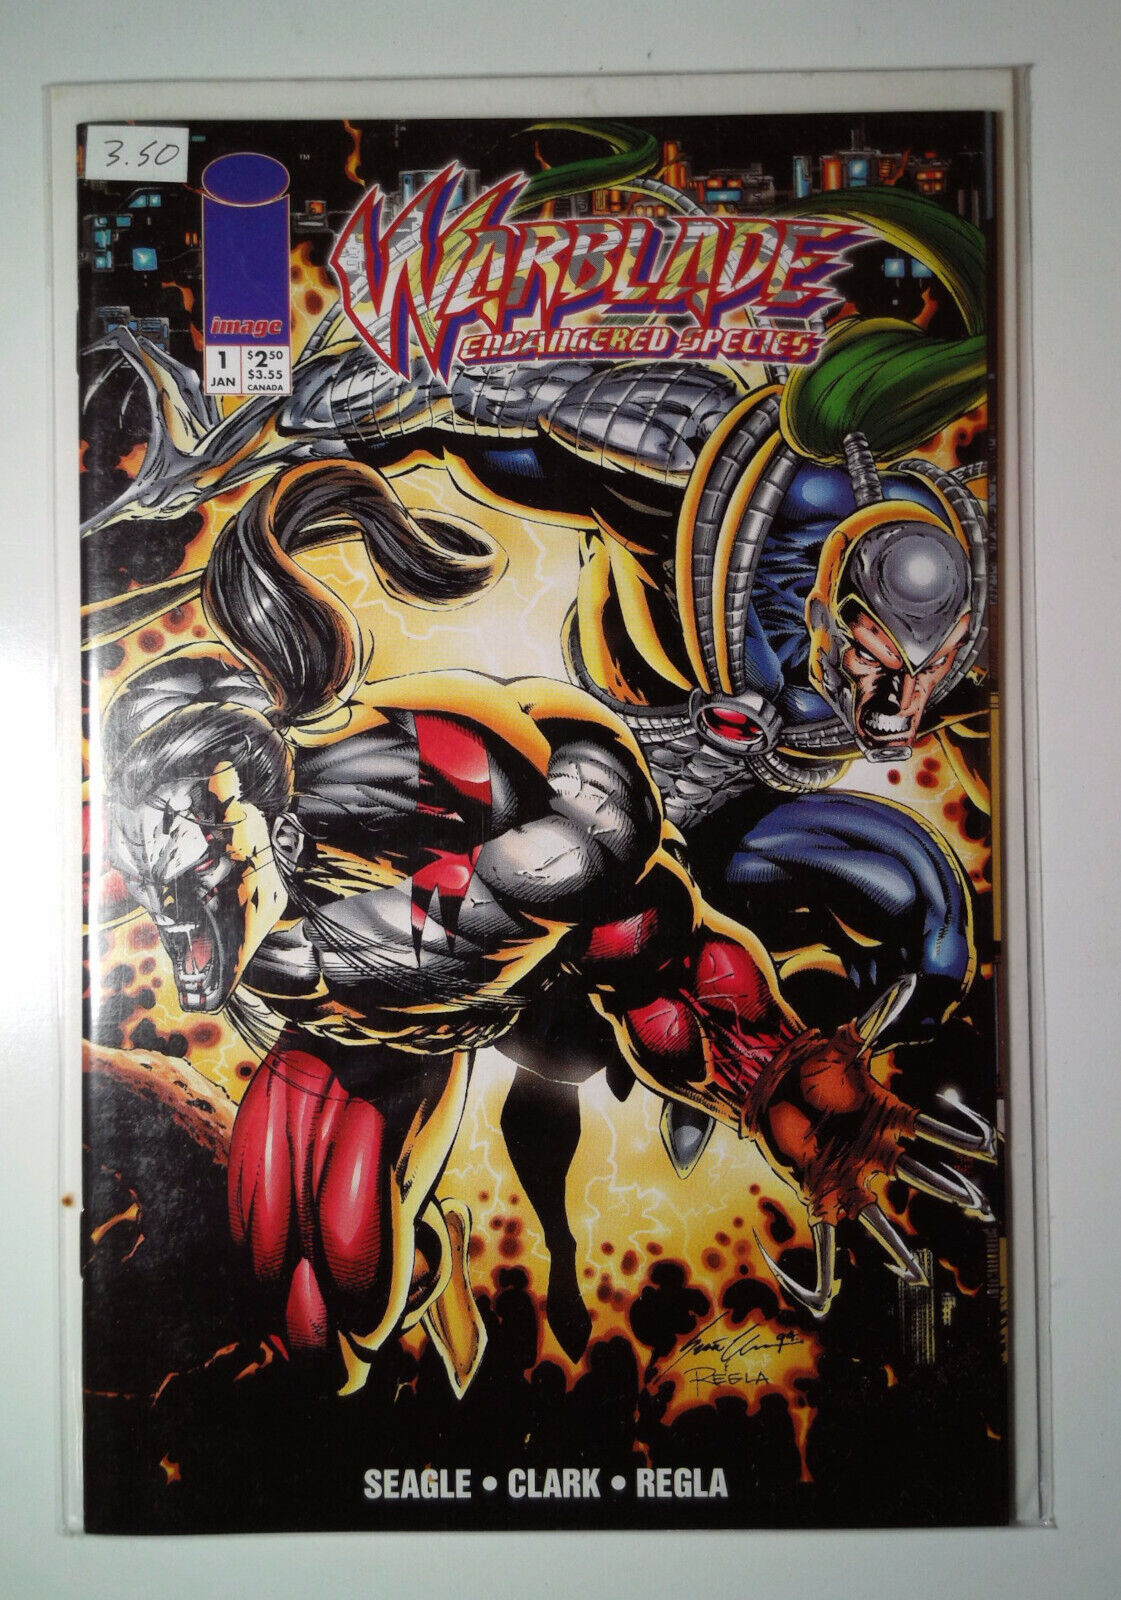 1995 Warblade: Endangered Species #1 Wildstorm 9.4 NM Comic Book